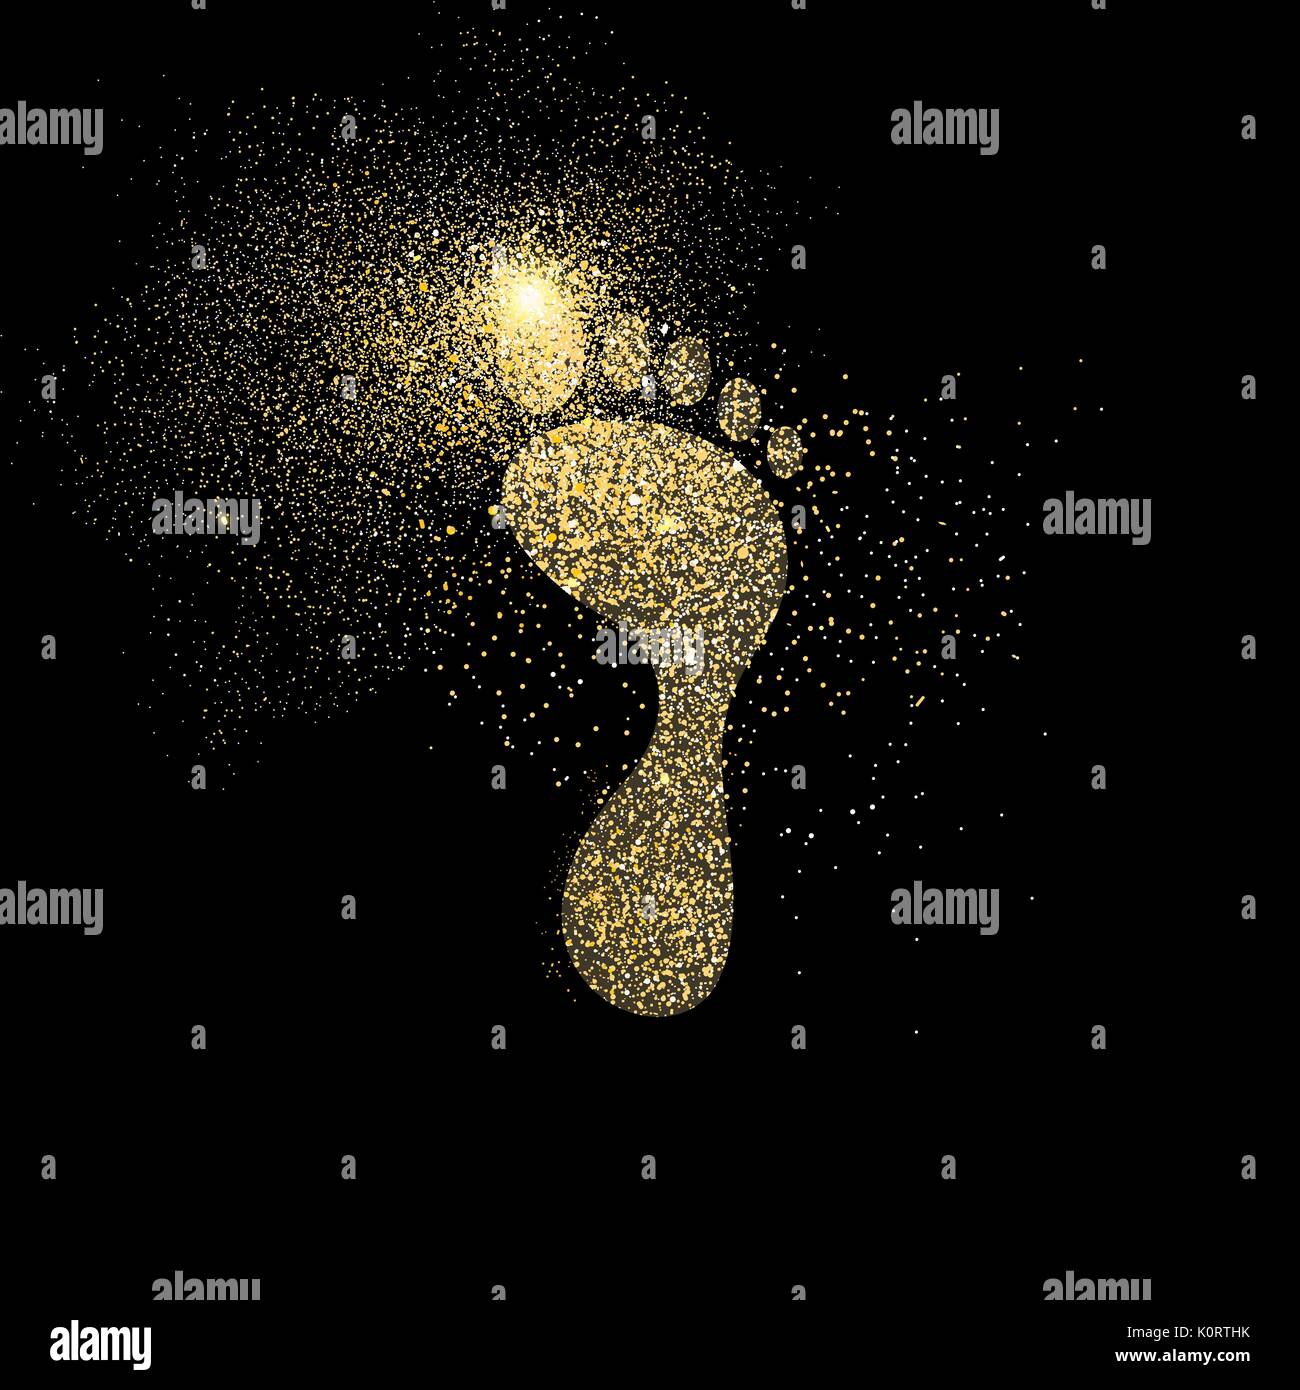 Foot Print symbol Konzeption Illustration, Gold footprint Symbol aus realistischen Golden glitter Staub auf schwarzen Hintergrund. EPS 10 Vektor. Stock Vektor